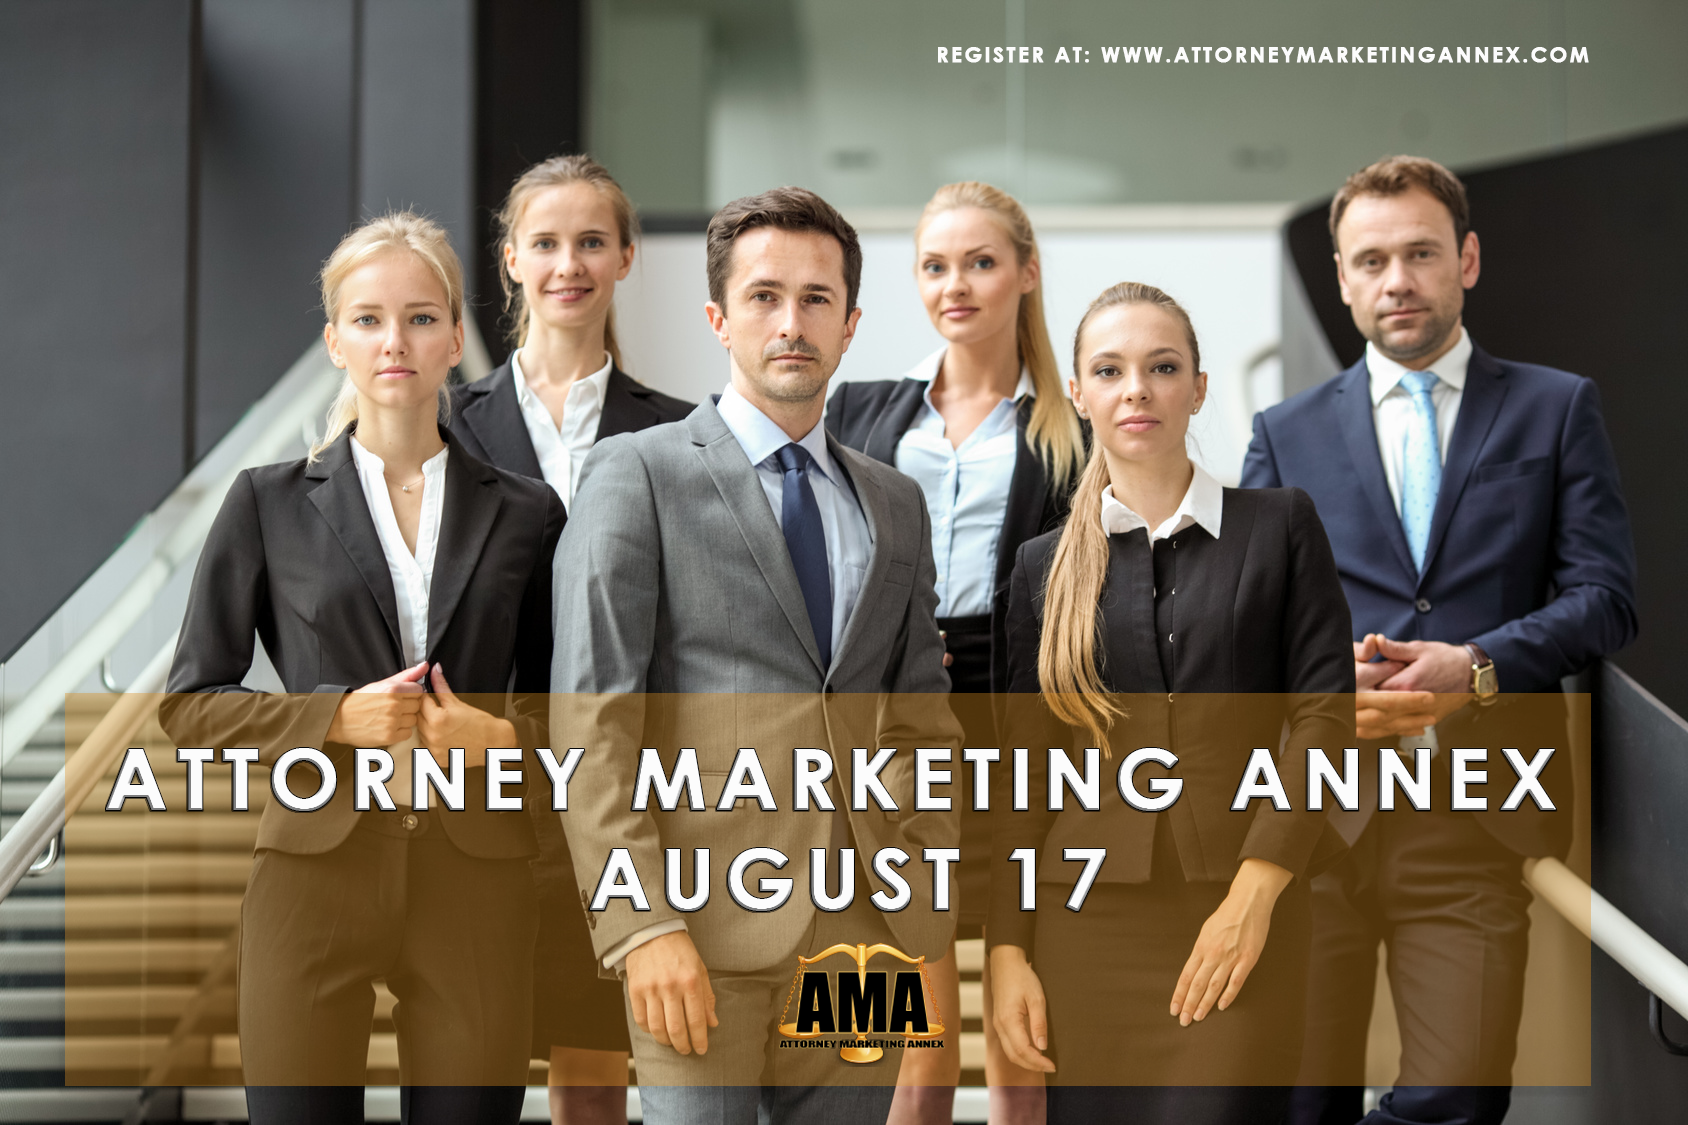 Attorney Marketing Annex Breakfast Network, Miami-Dade, Florida, United States